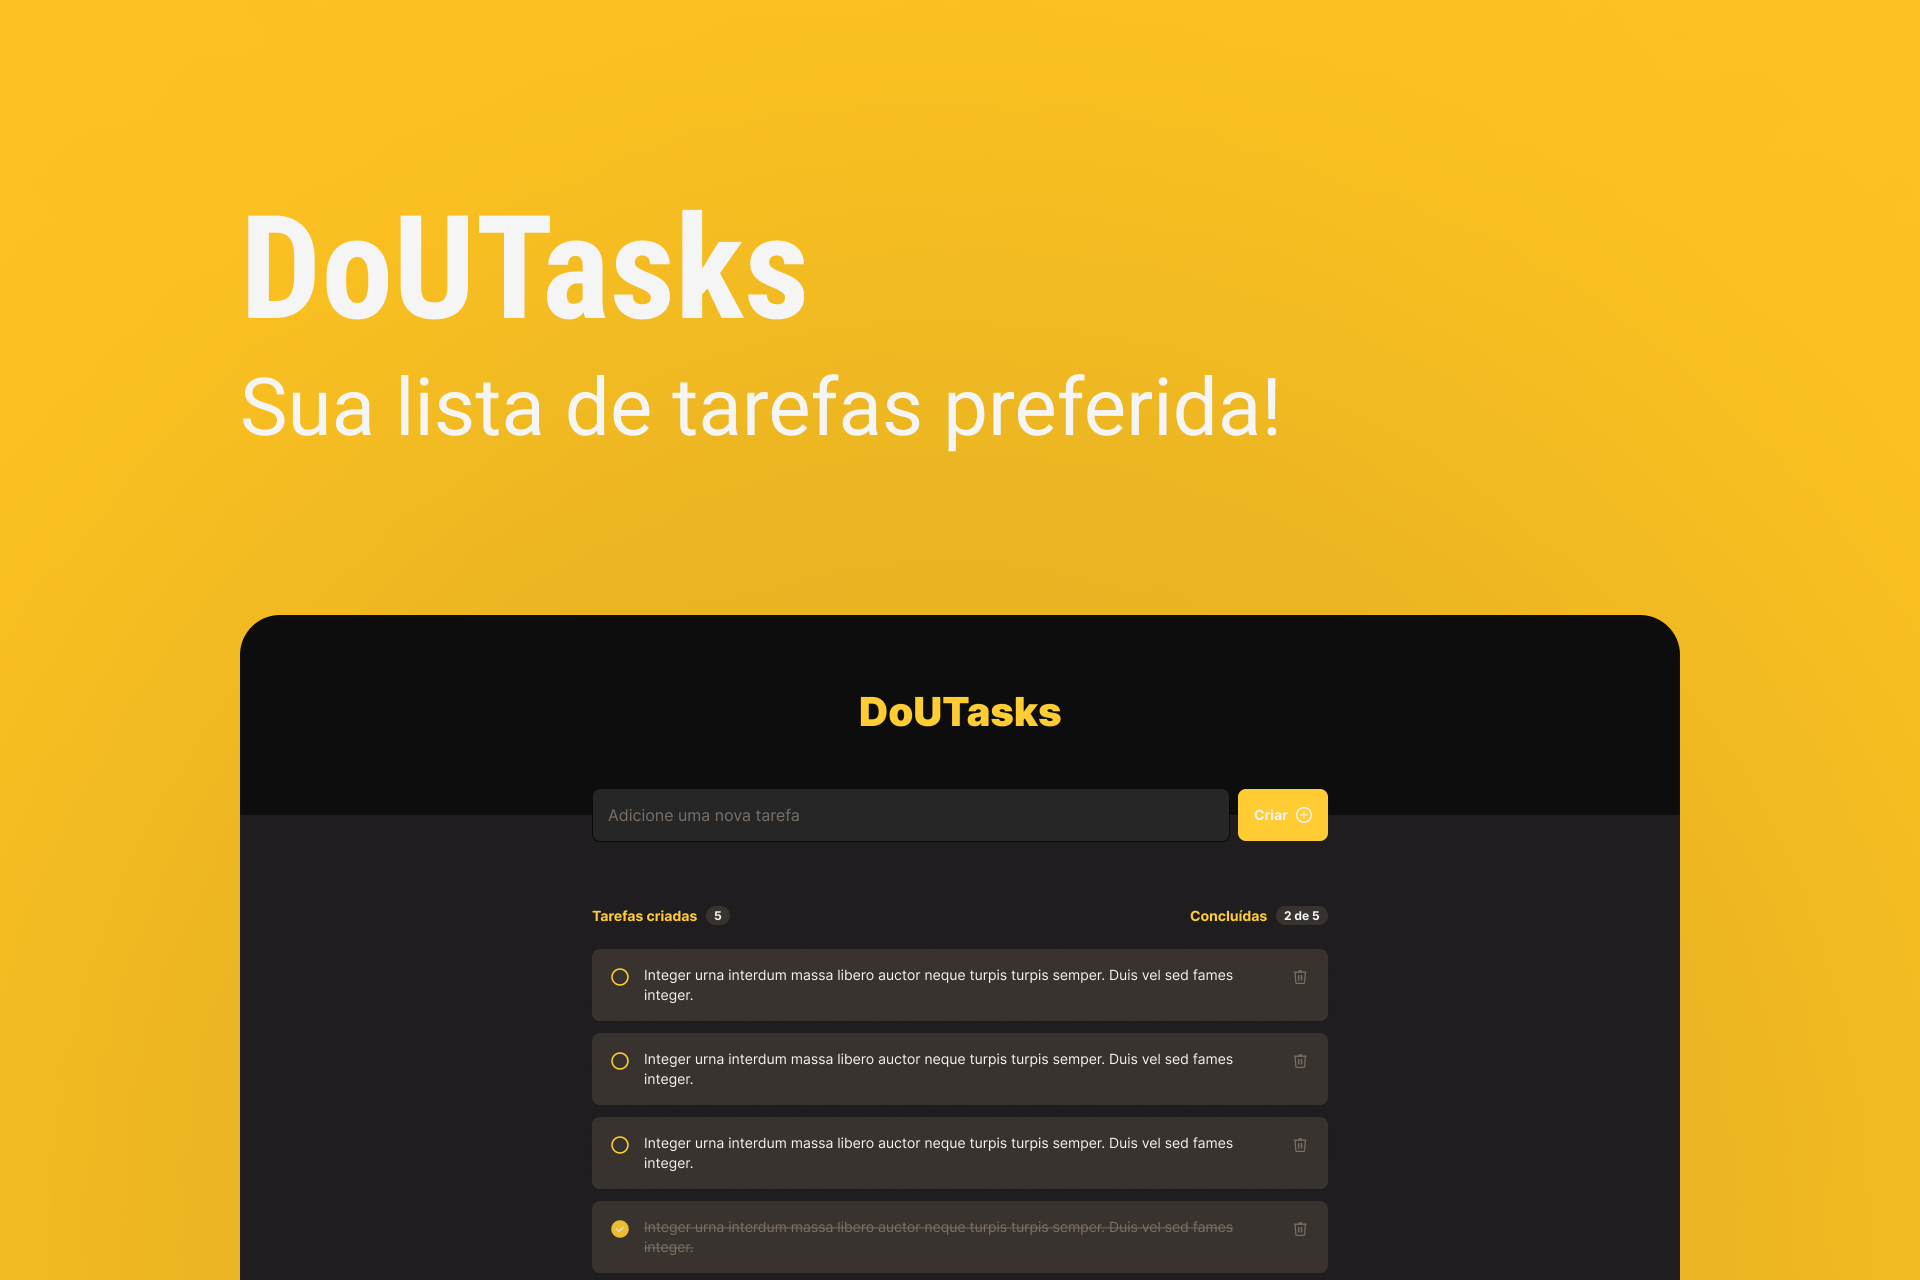 Imagem de fundo amarelo do projeto DoUTasks abaixo e um título 'DoUTasks' acima logo abaixo 'Sua lista de tarefas preferida!'